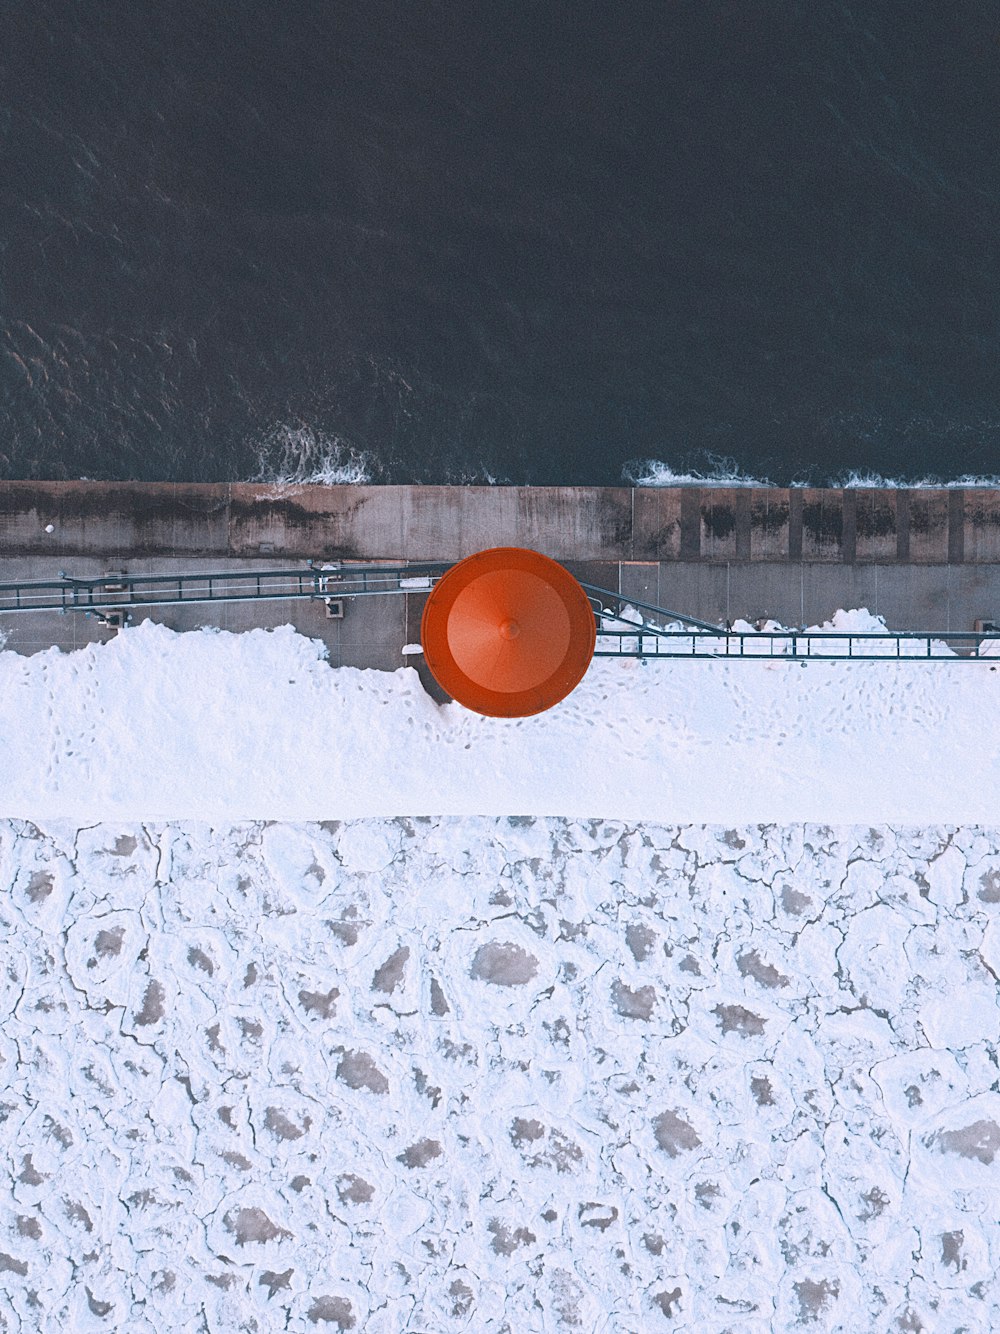 Ein großer orangefarbener Frisbee, der auf schneebedecktem Boden sitzt